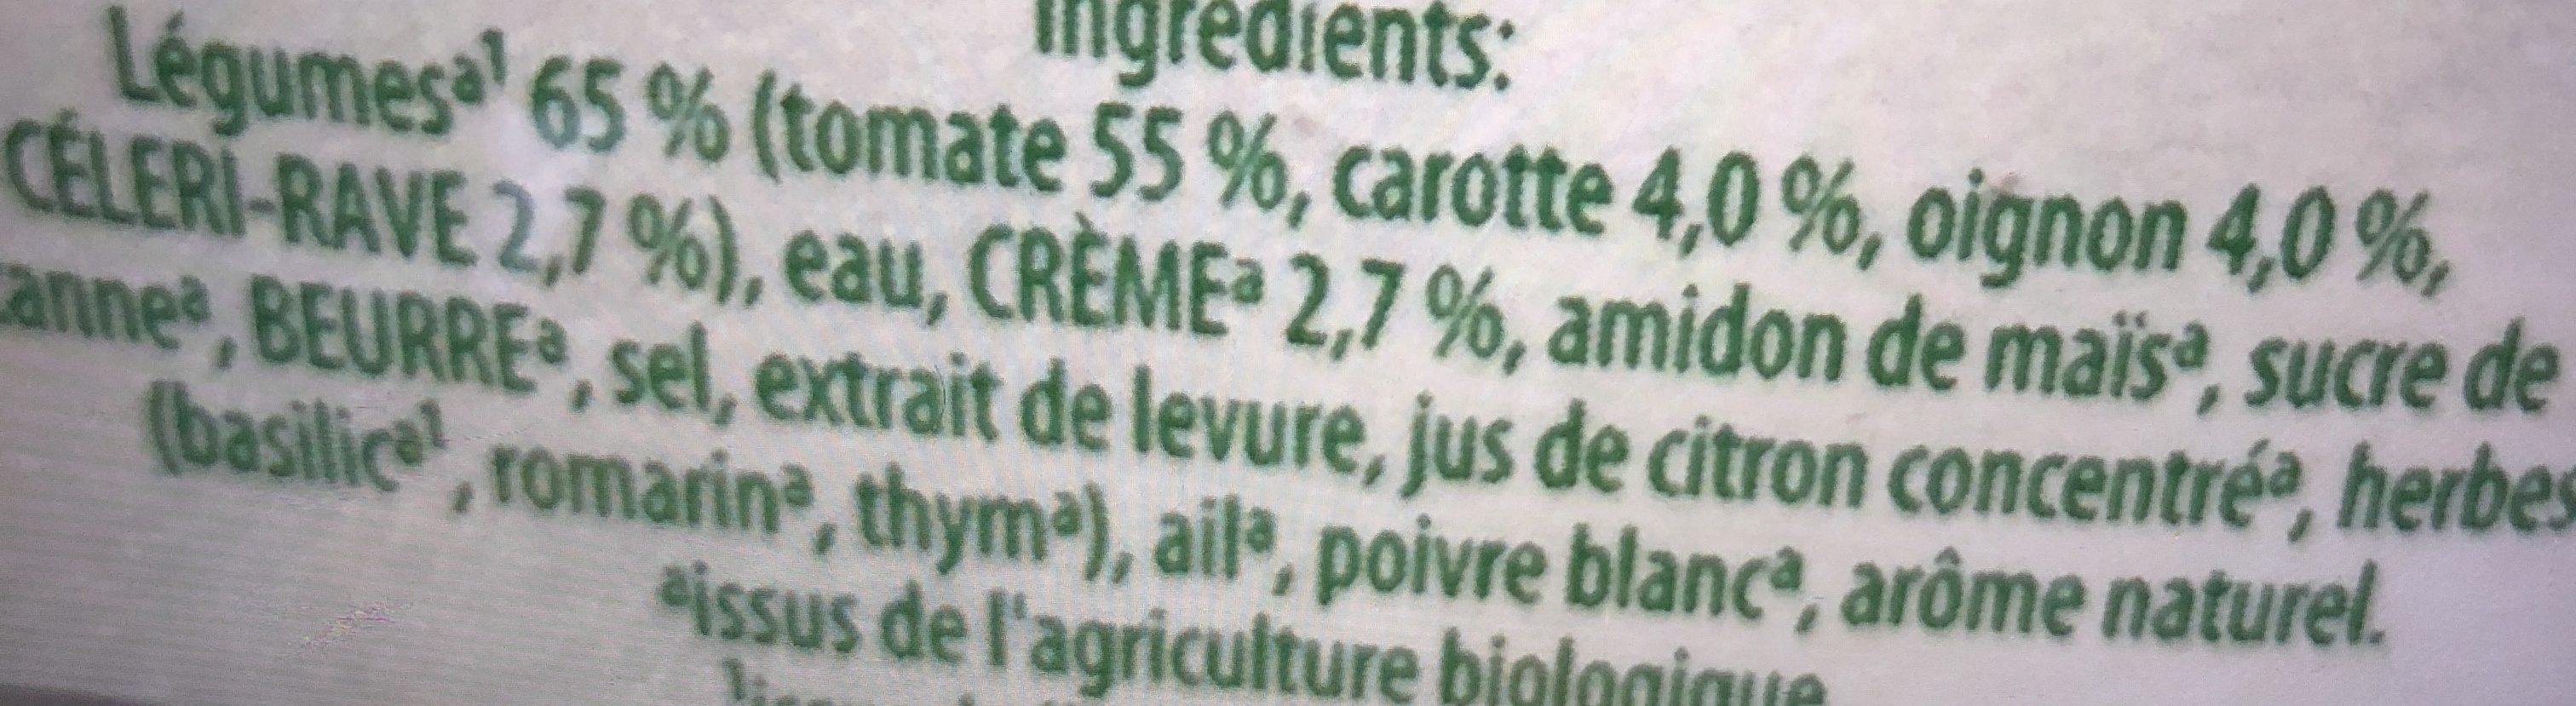 Knorr - Ingrediënten - fr